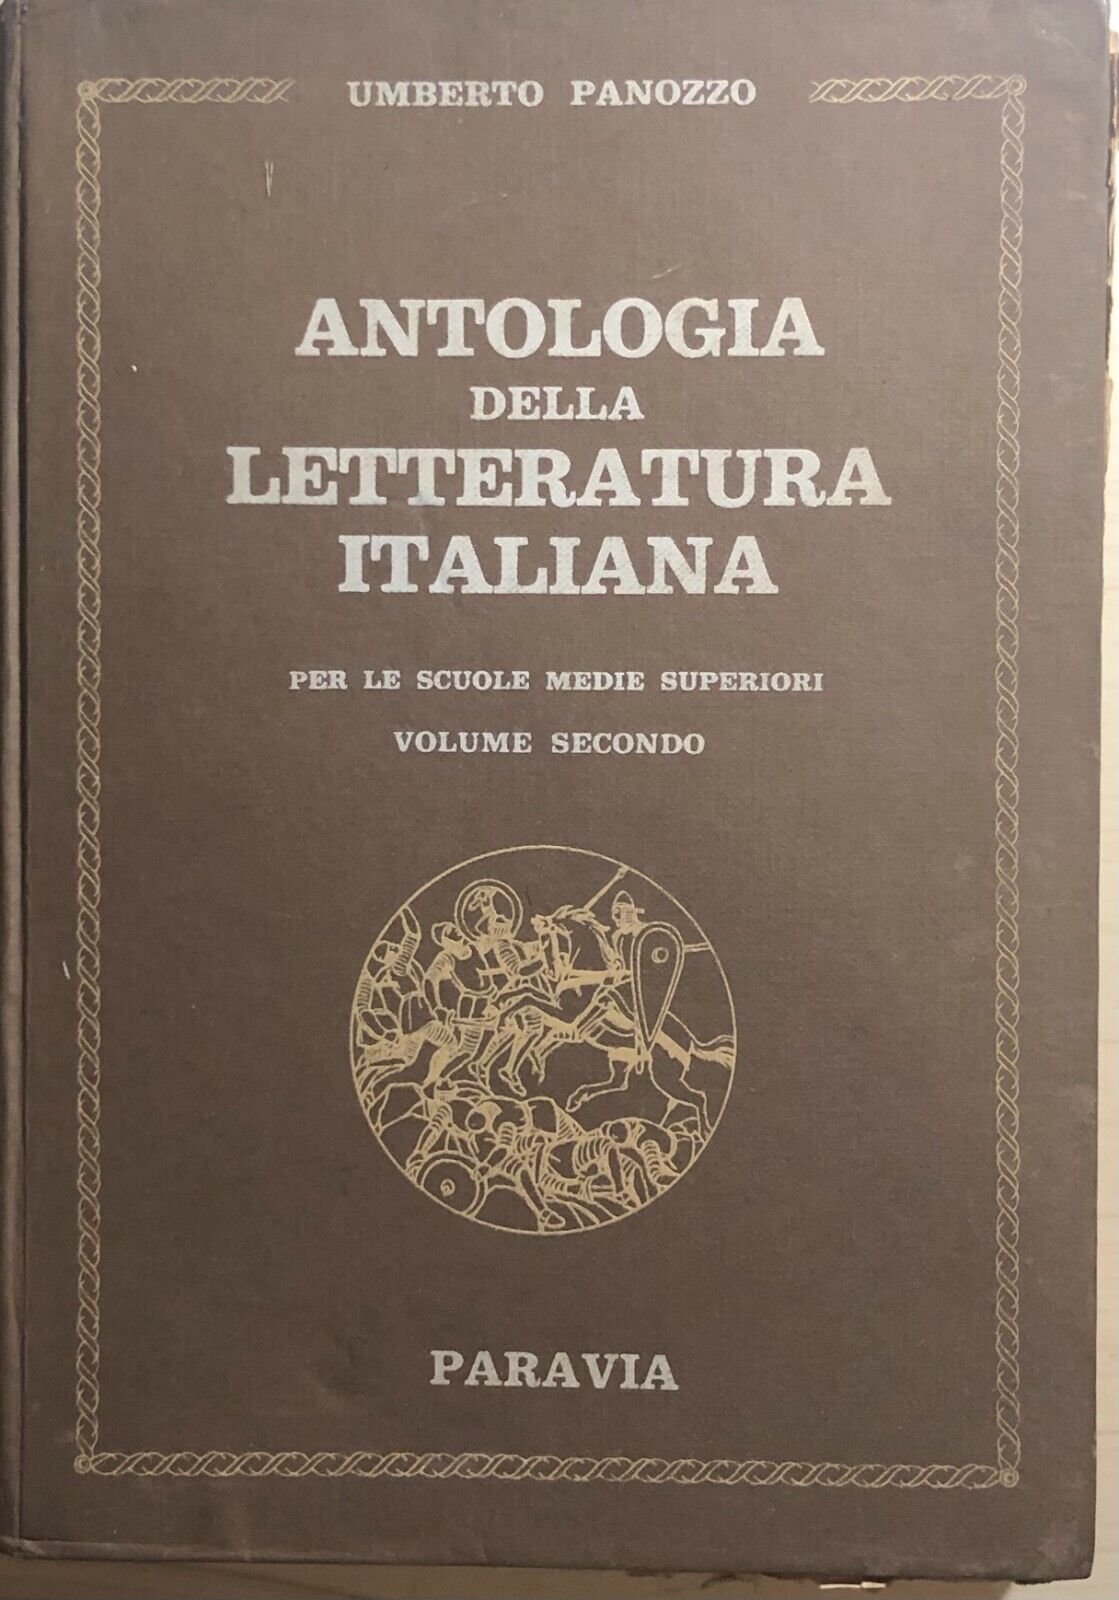 Antologia della letteratura italiana per le scuole medie superiori Vol.II di Umb